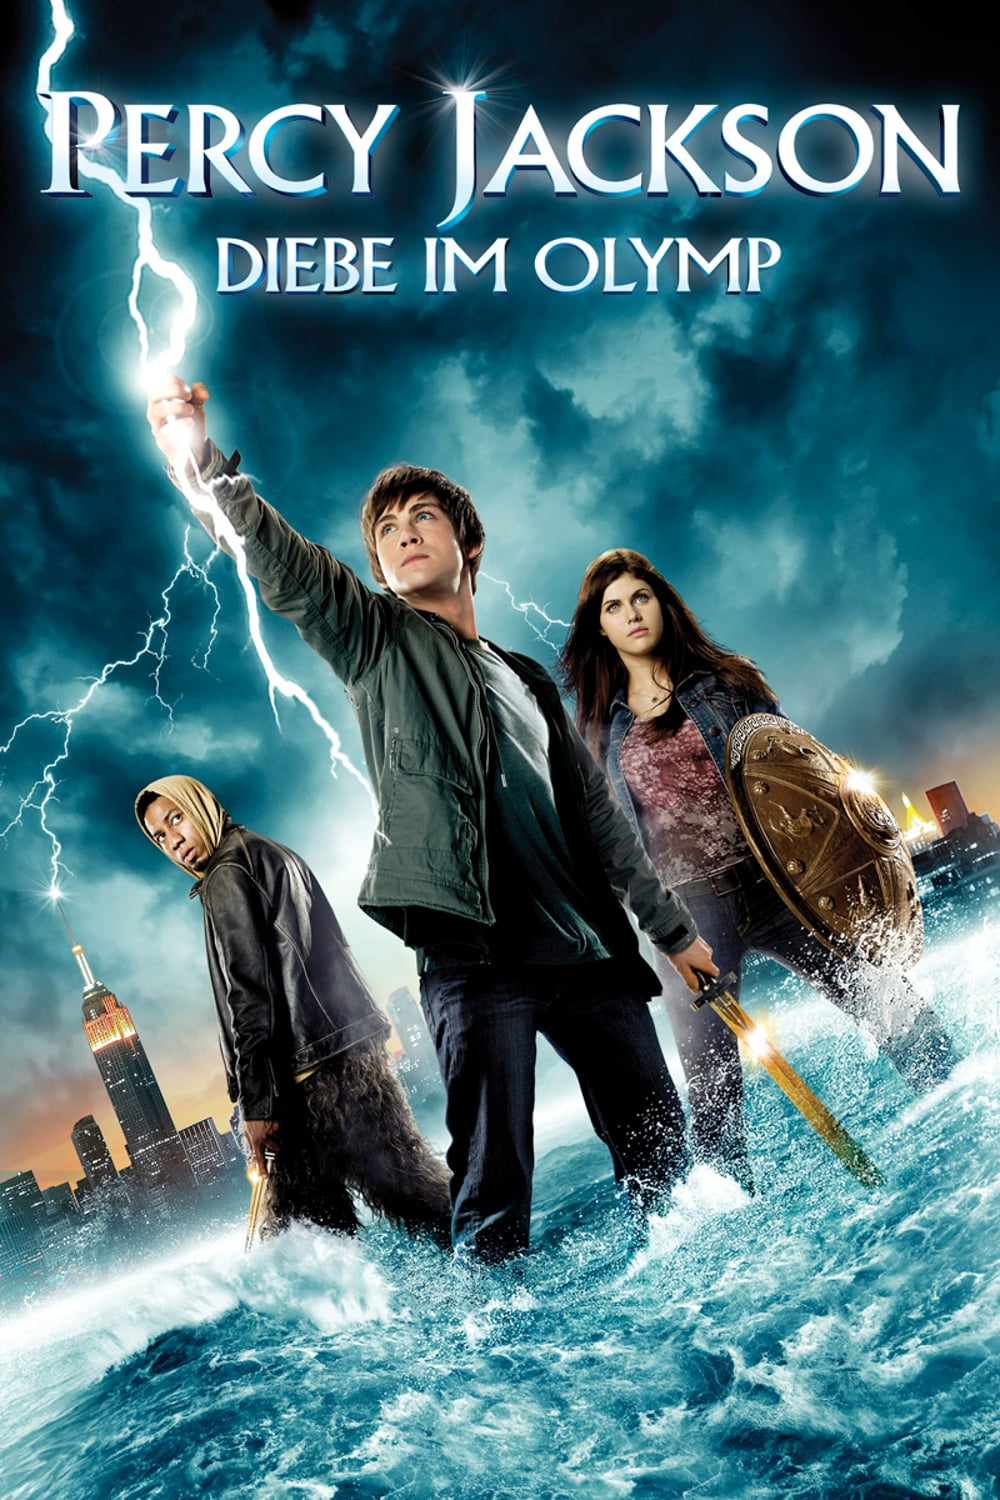 Plakat von "Percy Jackson - Diebe im Olymp"